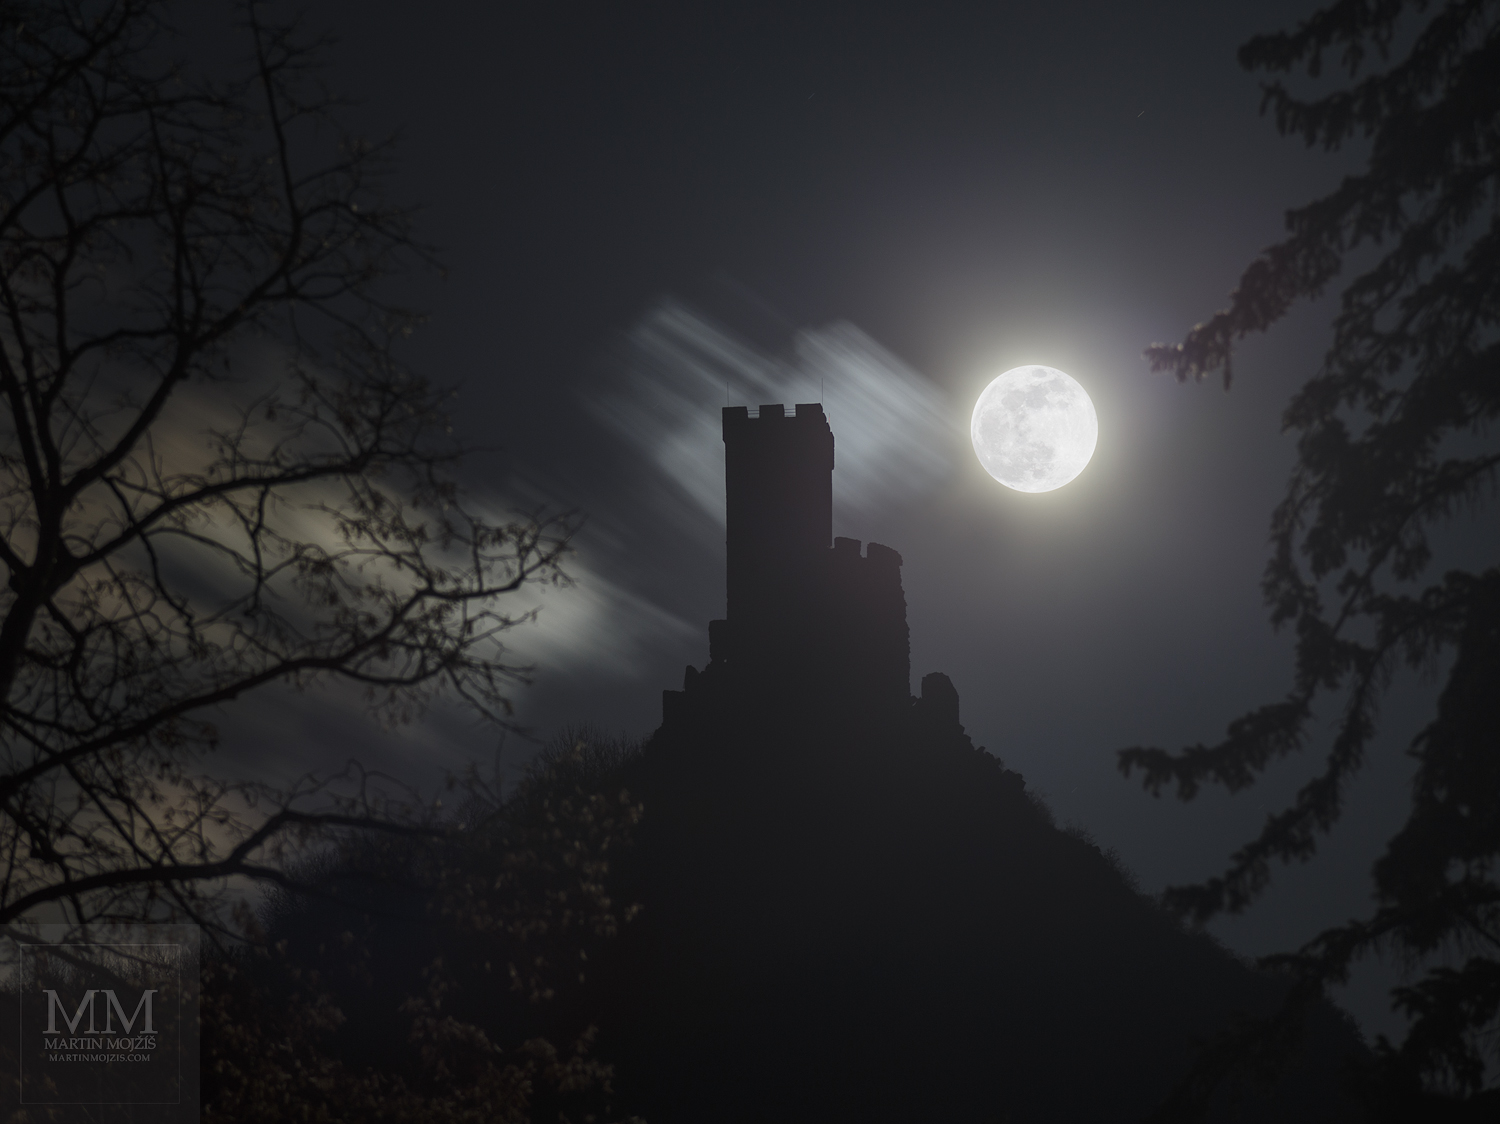 Hrad Klapý (Hazmburk) v noci, velký Měsíc v úplňku.